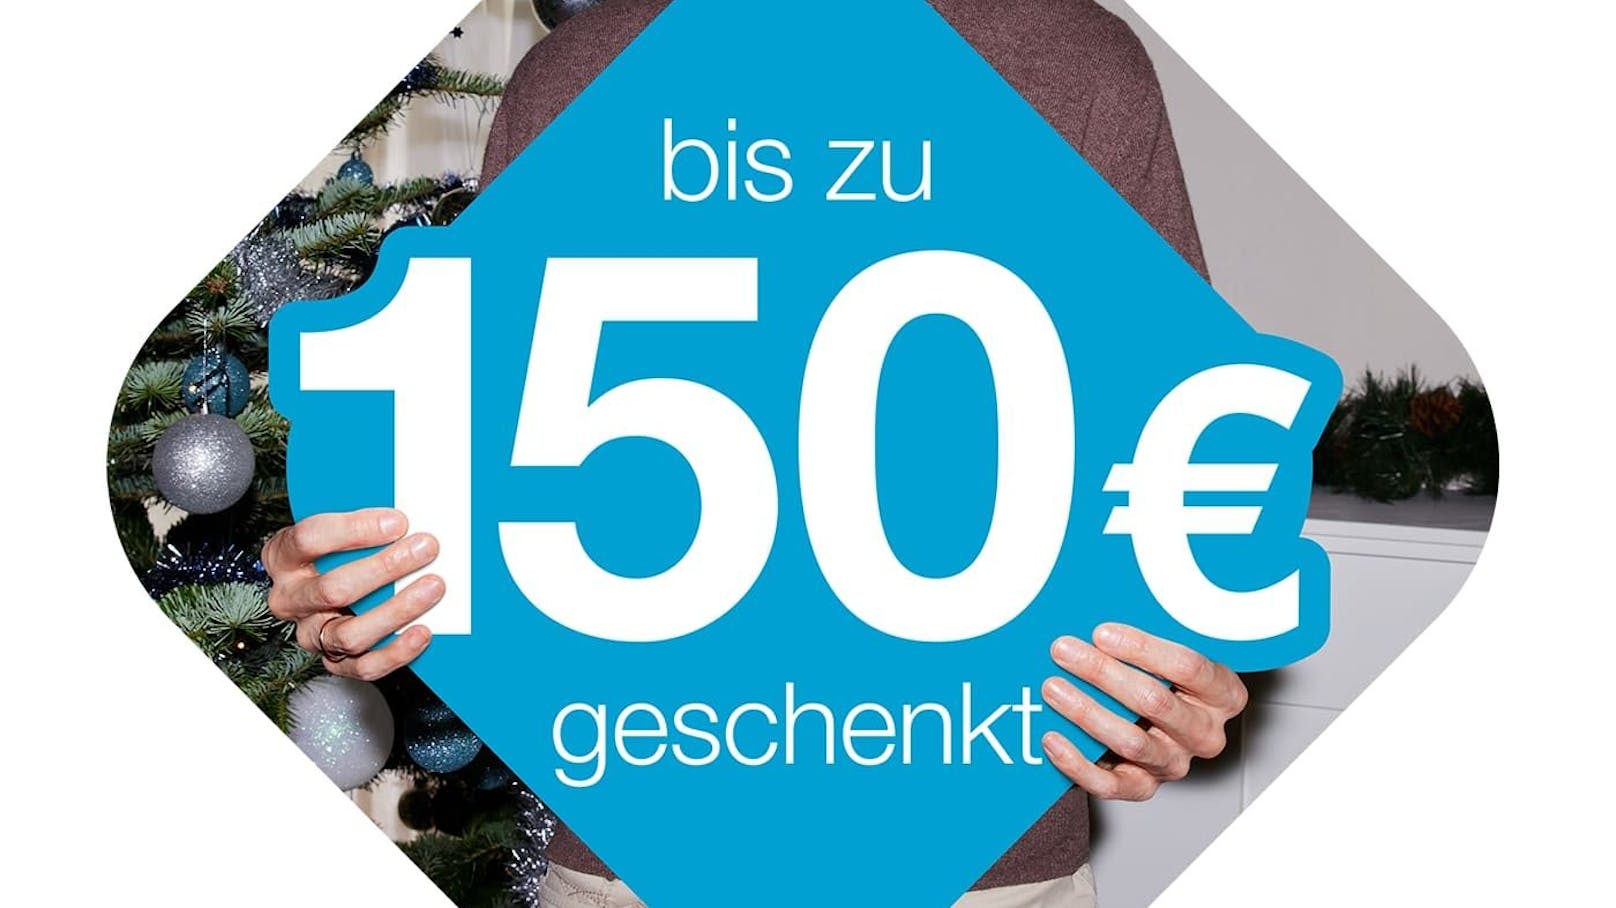 Drei Xmas: Bis zu 150 Euro Weihnachtsbonus und Top-Smartphones ab 0 Euro.